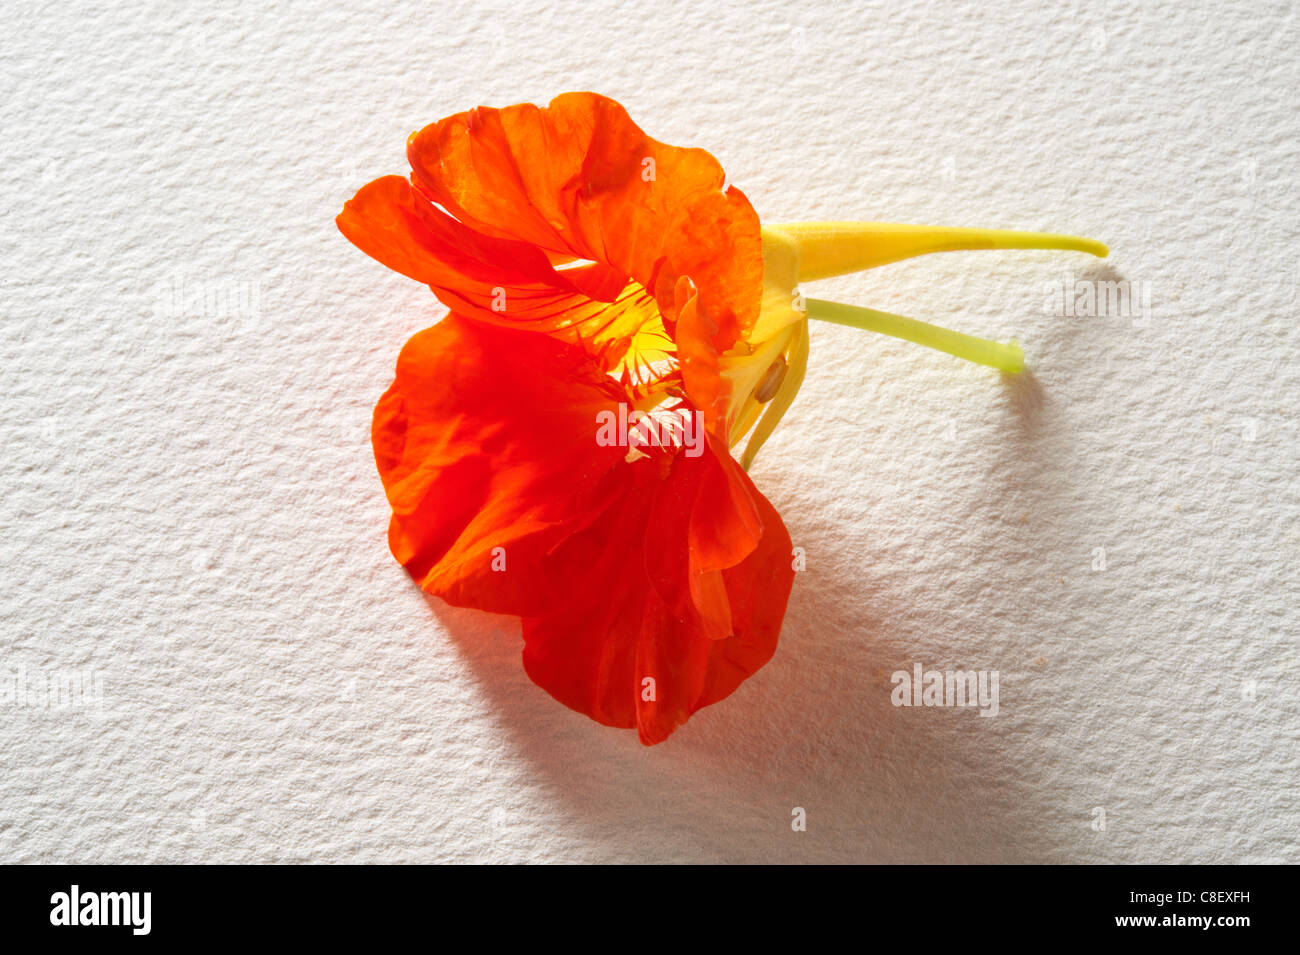 Fresh flowering Nasturtium flowers Stock Photo